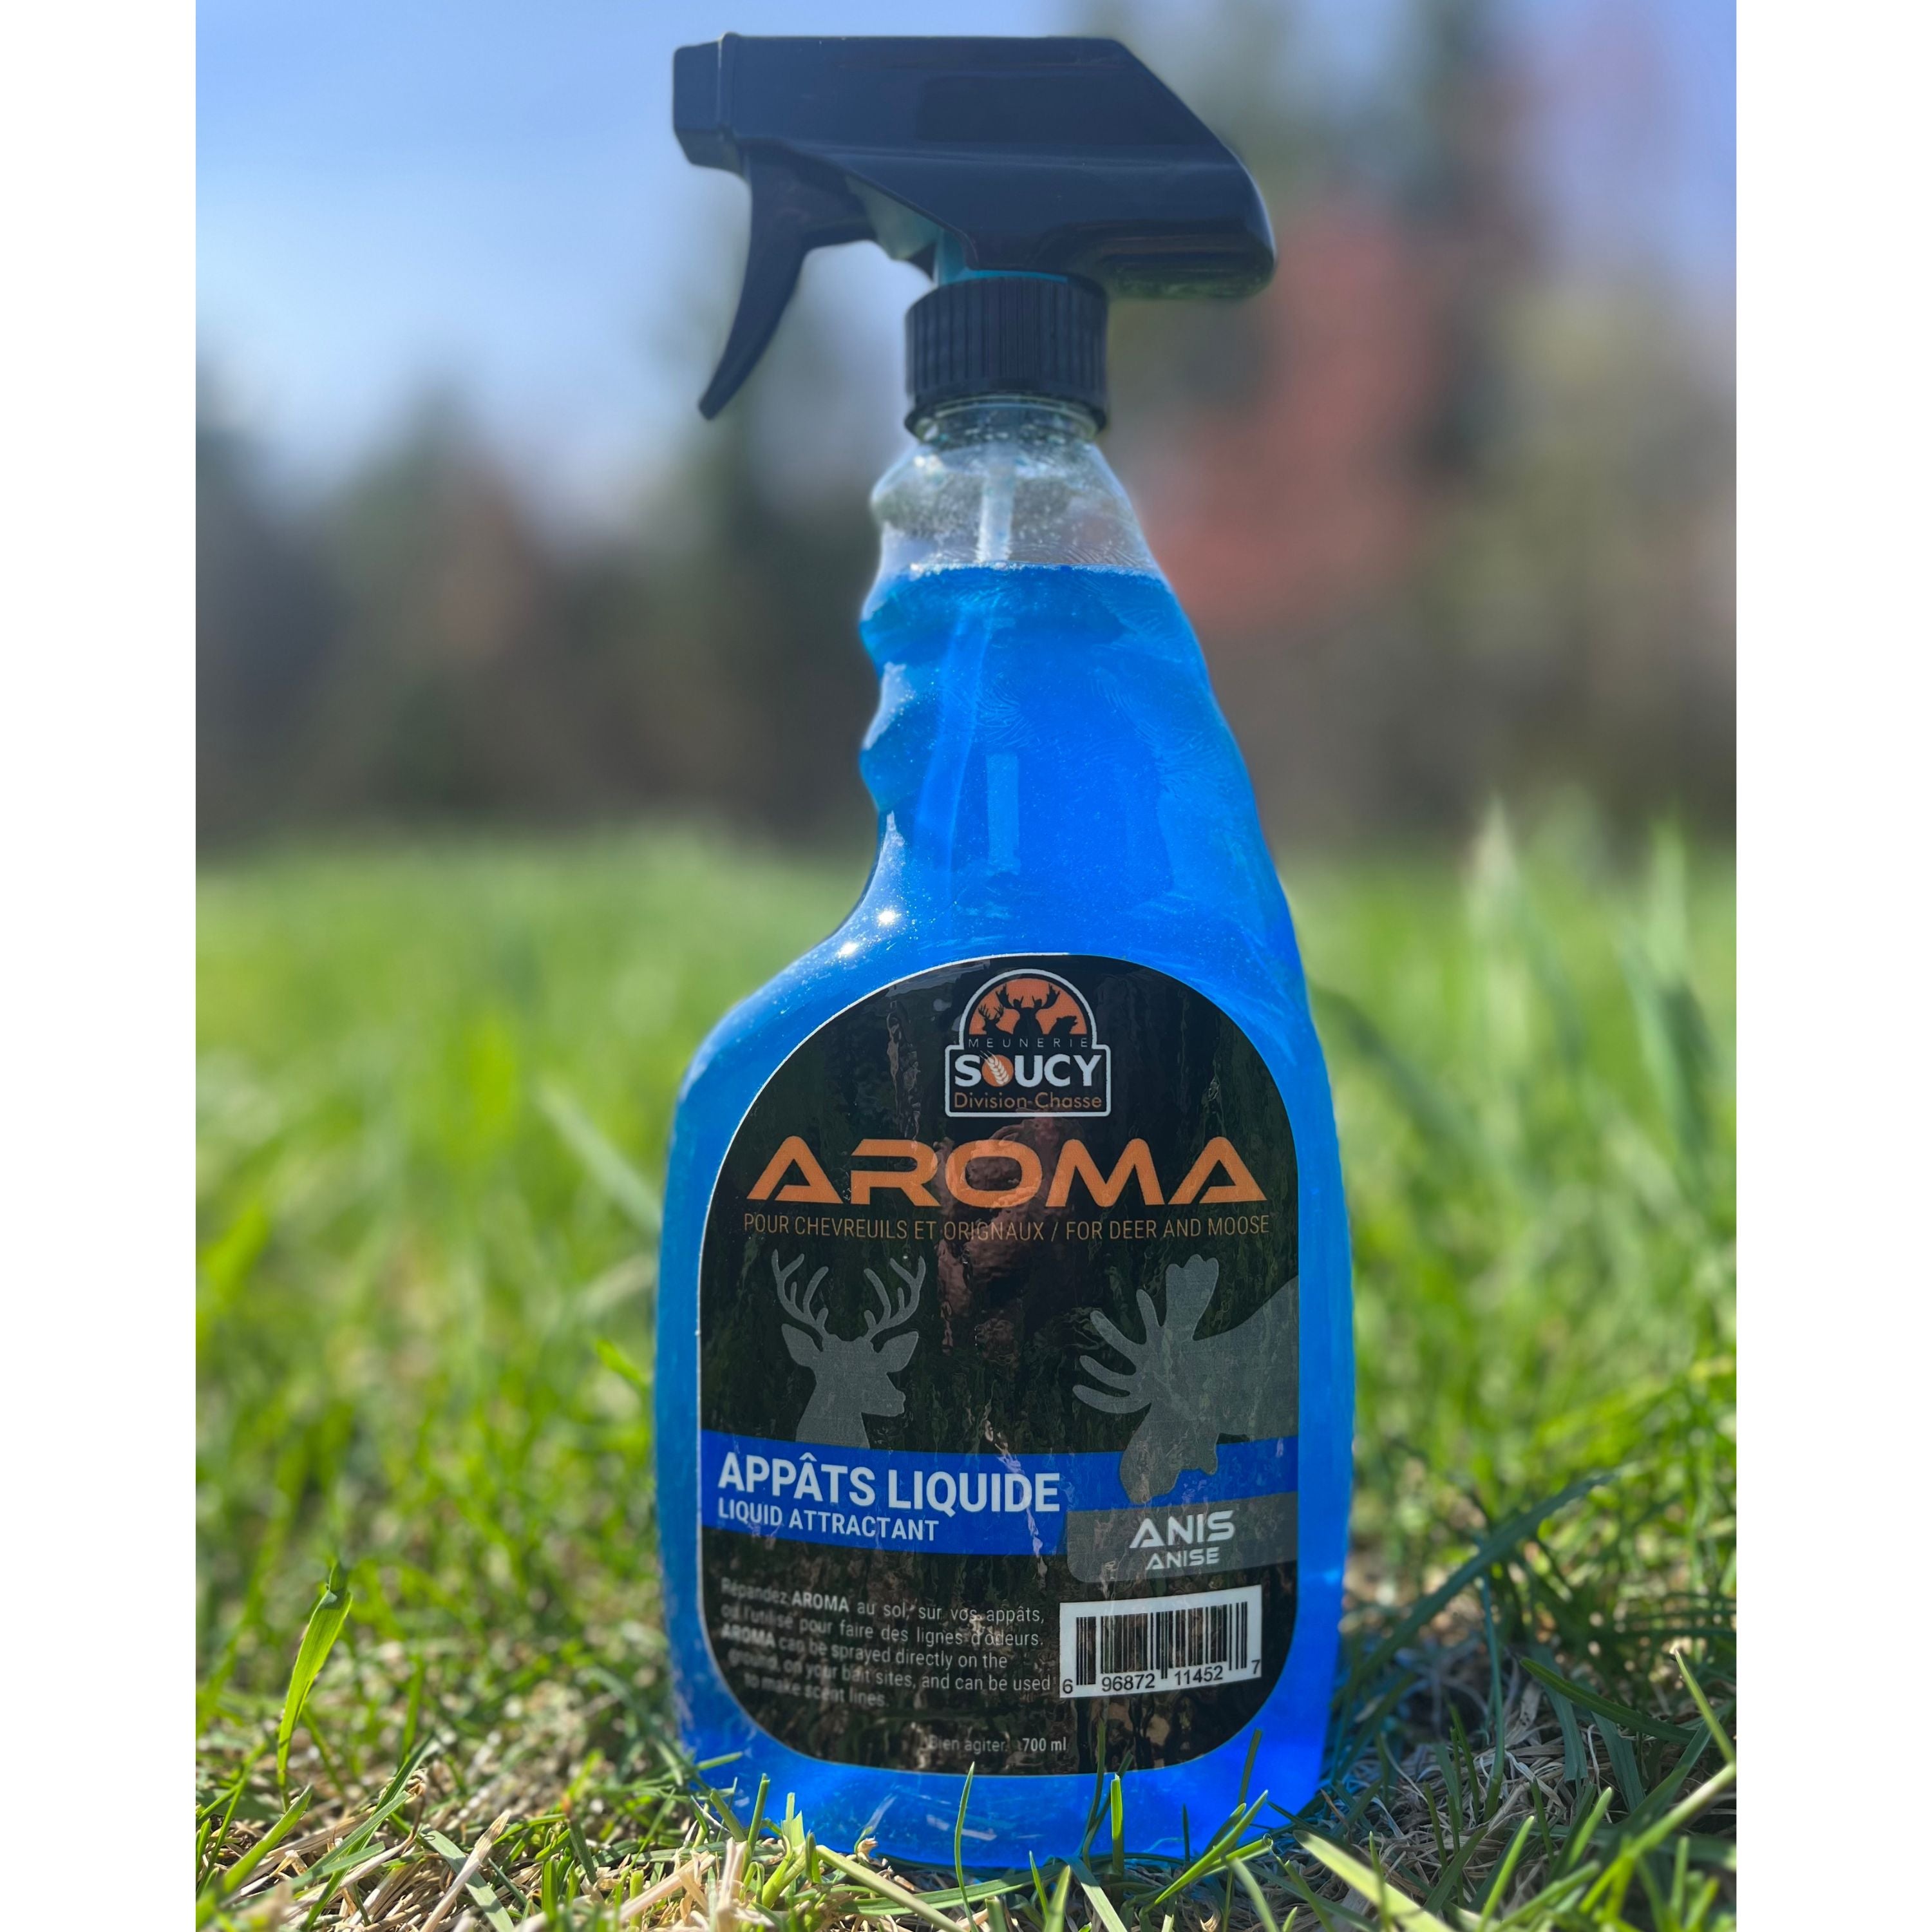 "Aroma" Anise flavor liquid attractant